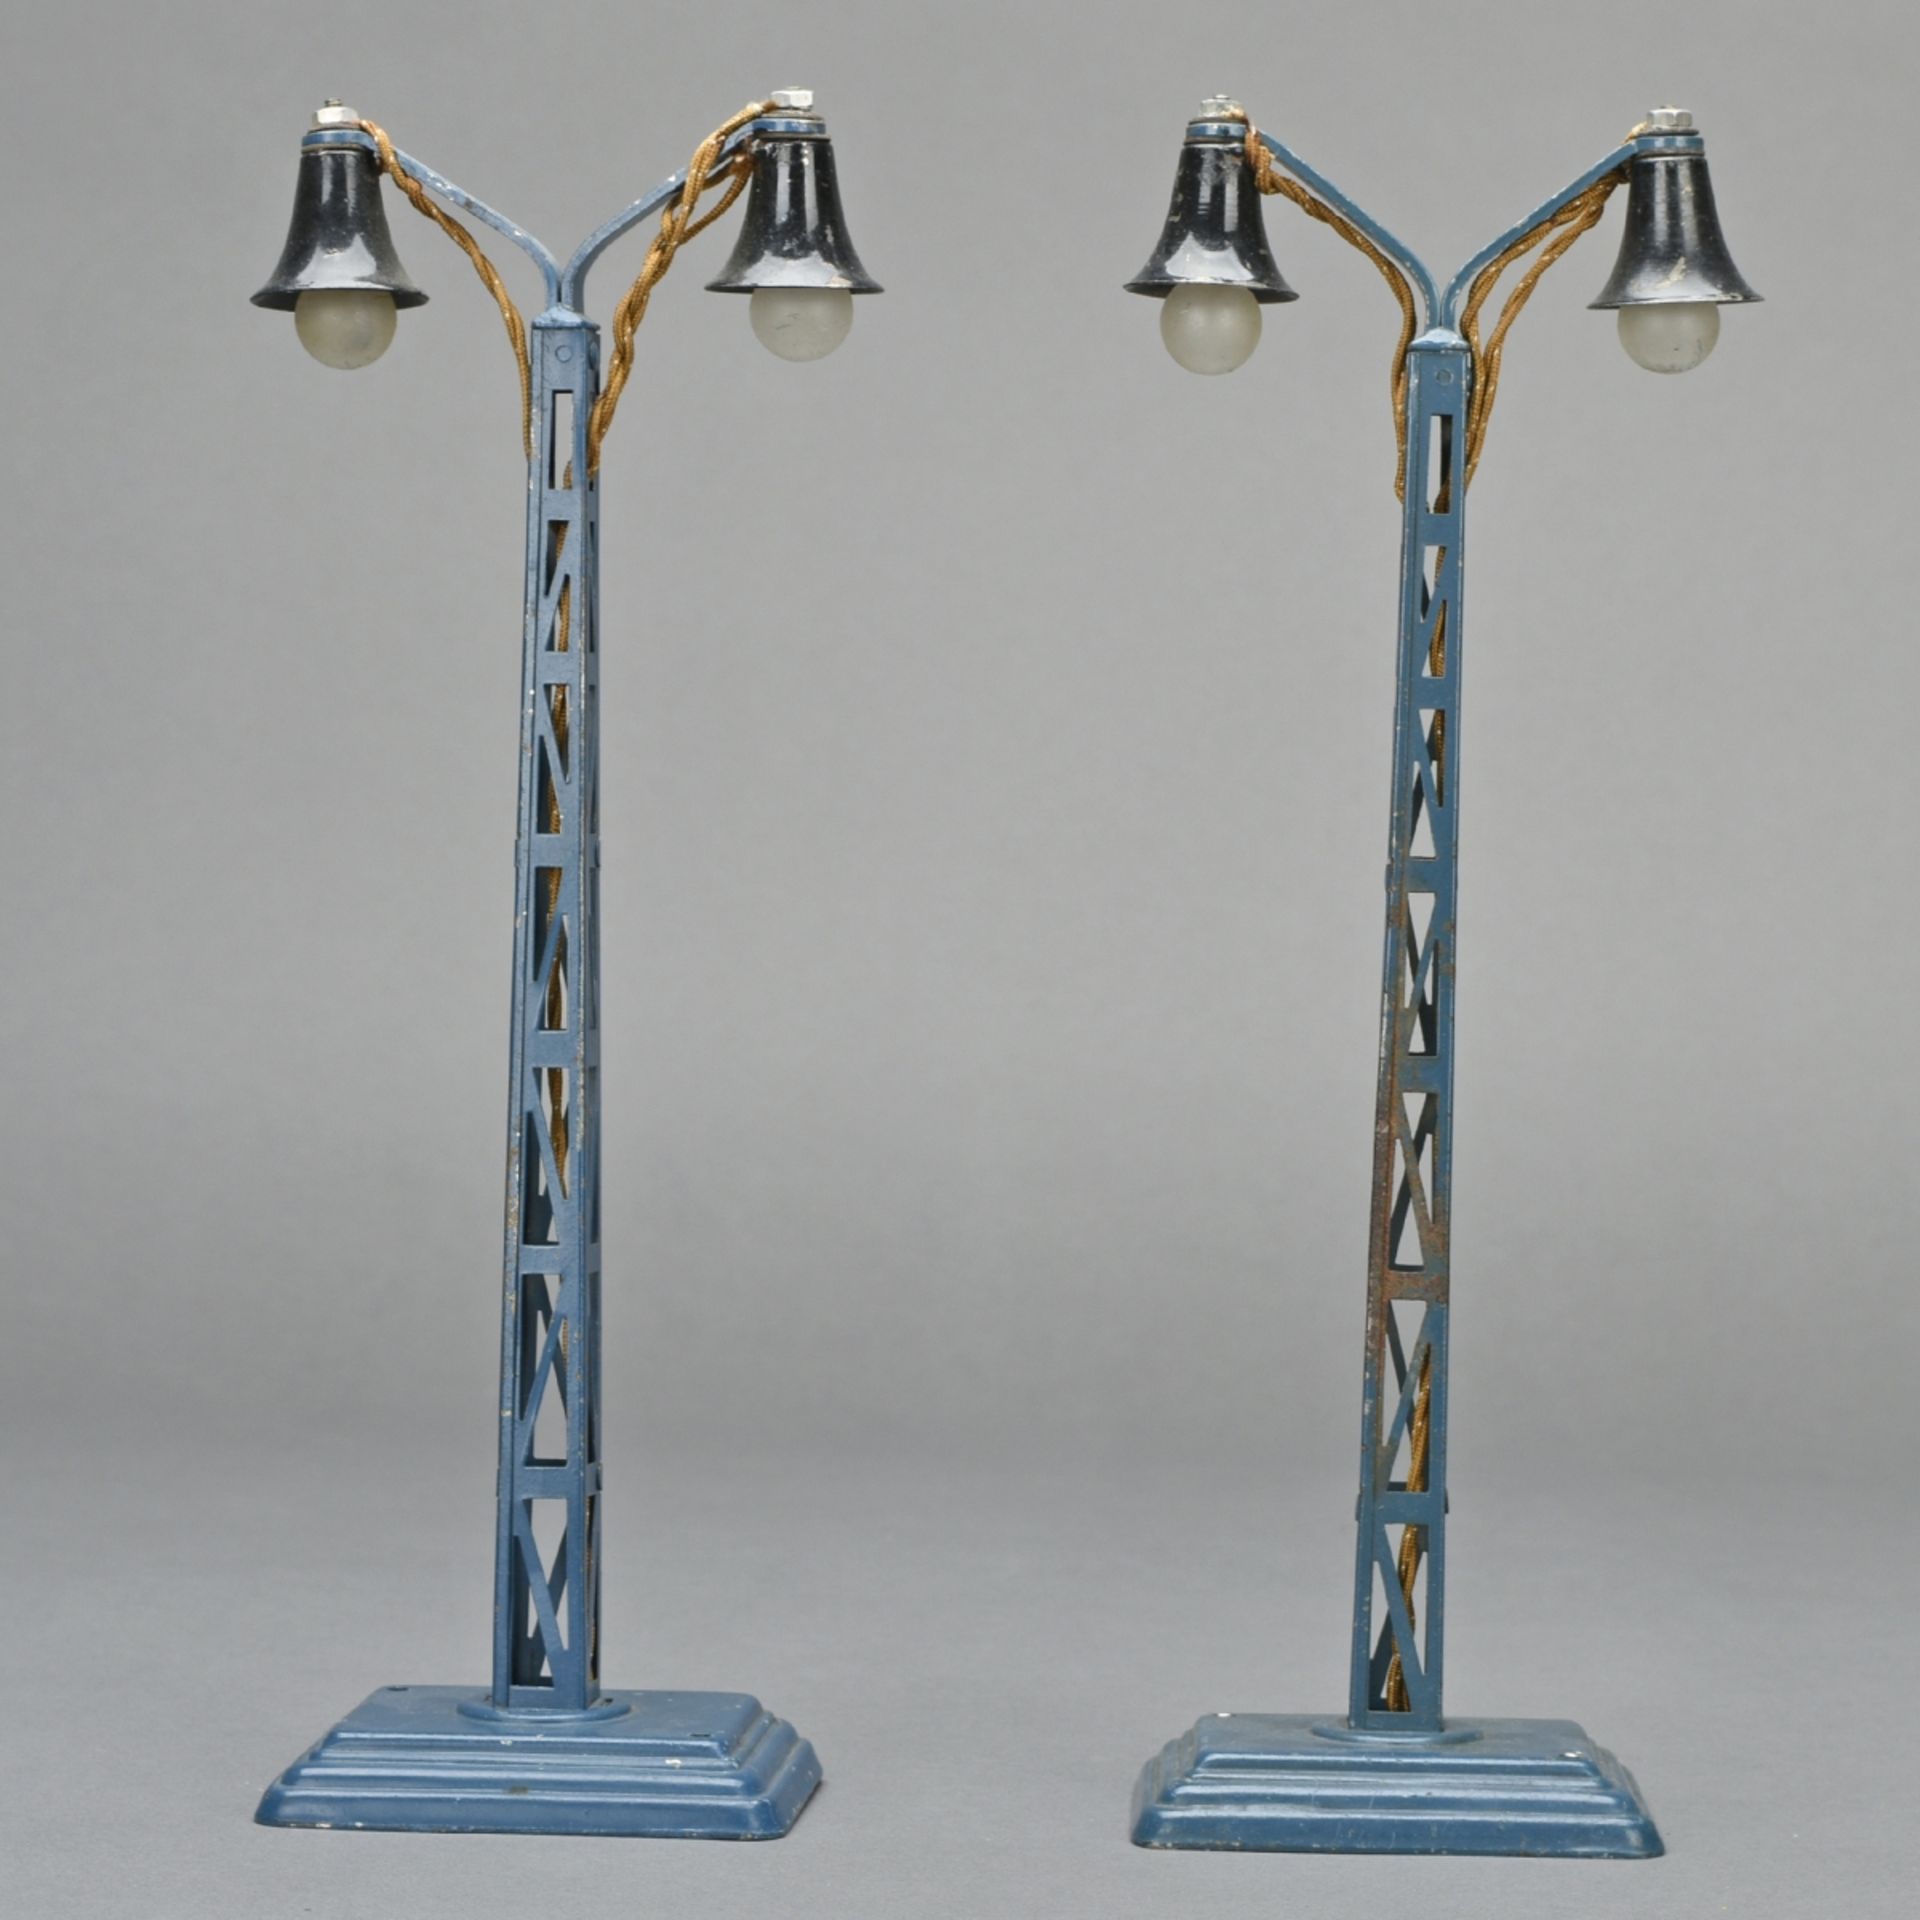 Paar Bogenlampen - Image 2 of 4